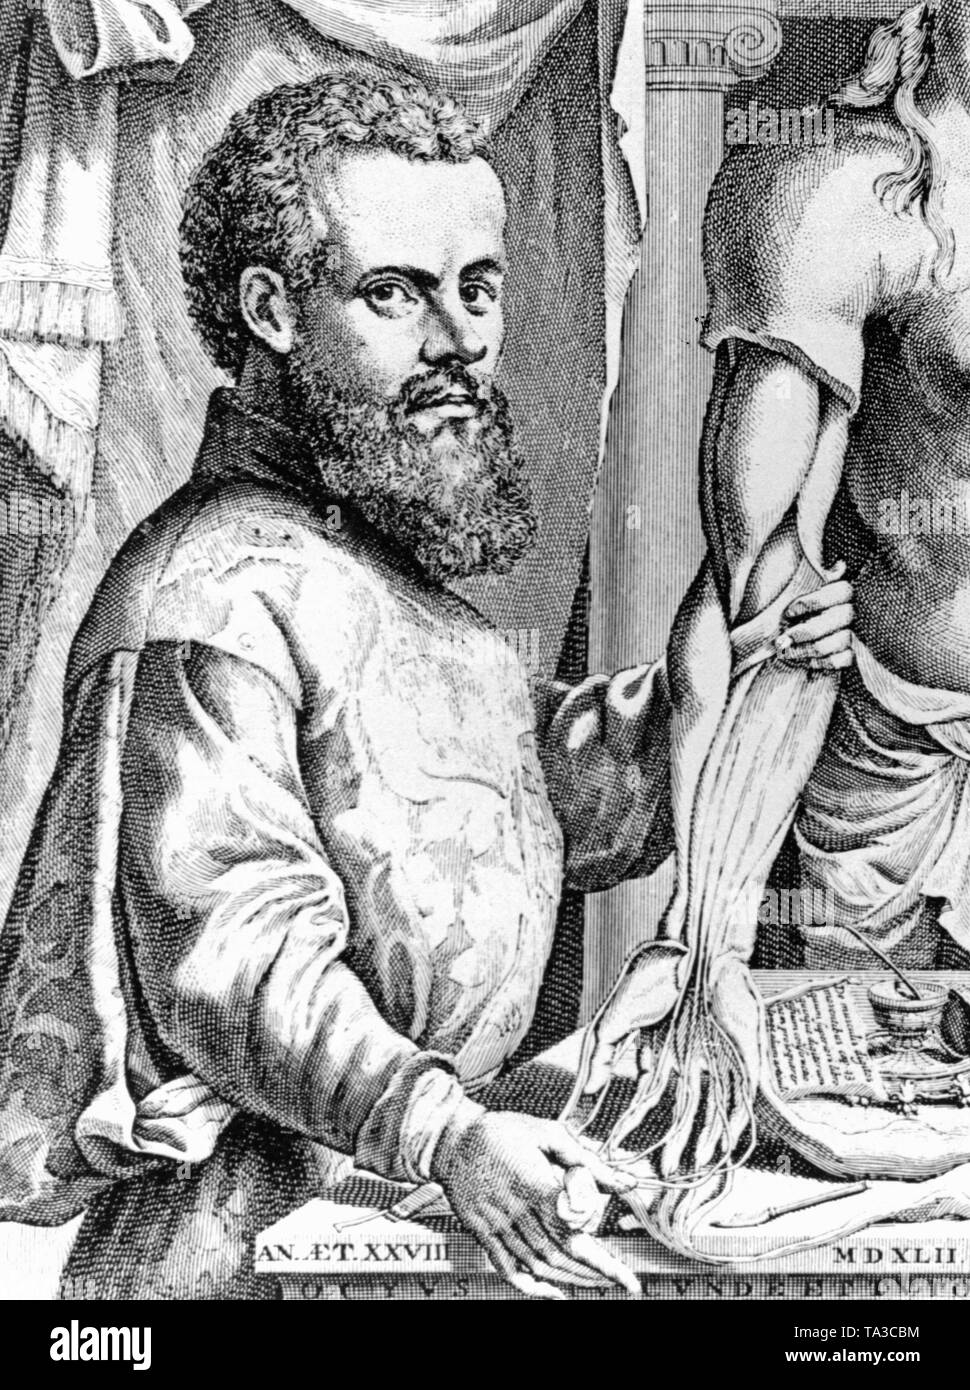 Ritratto dell'anatomista fiammingo Andreas Vesalius nel suo lavoro 'De humani corporis fabrica libri septem'. Foto Stock